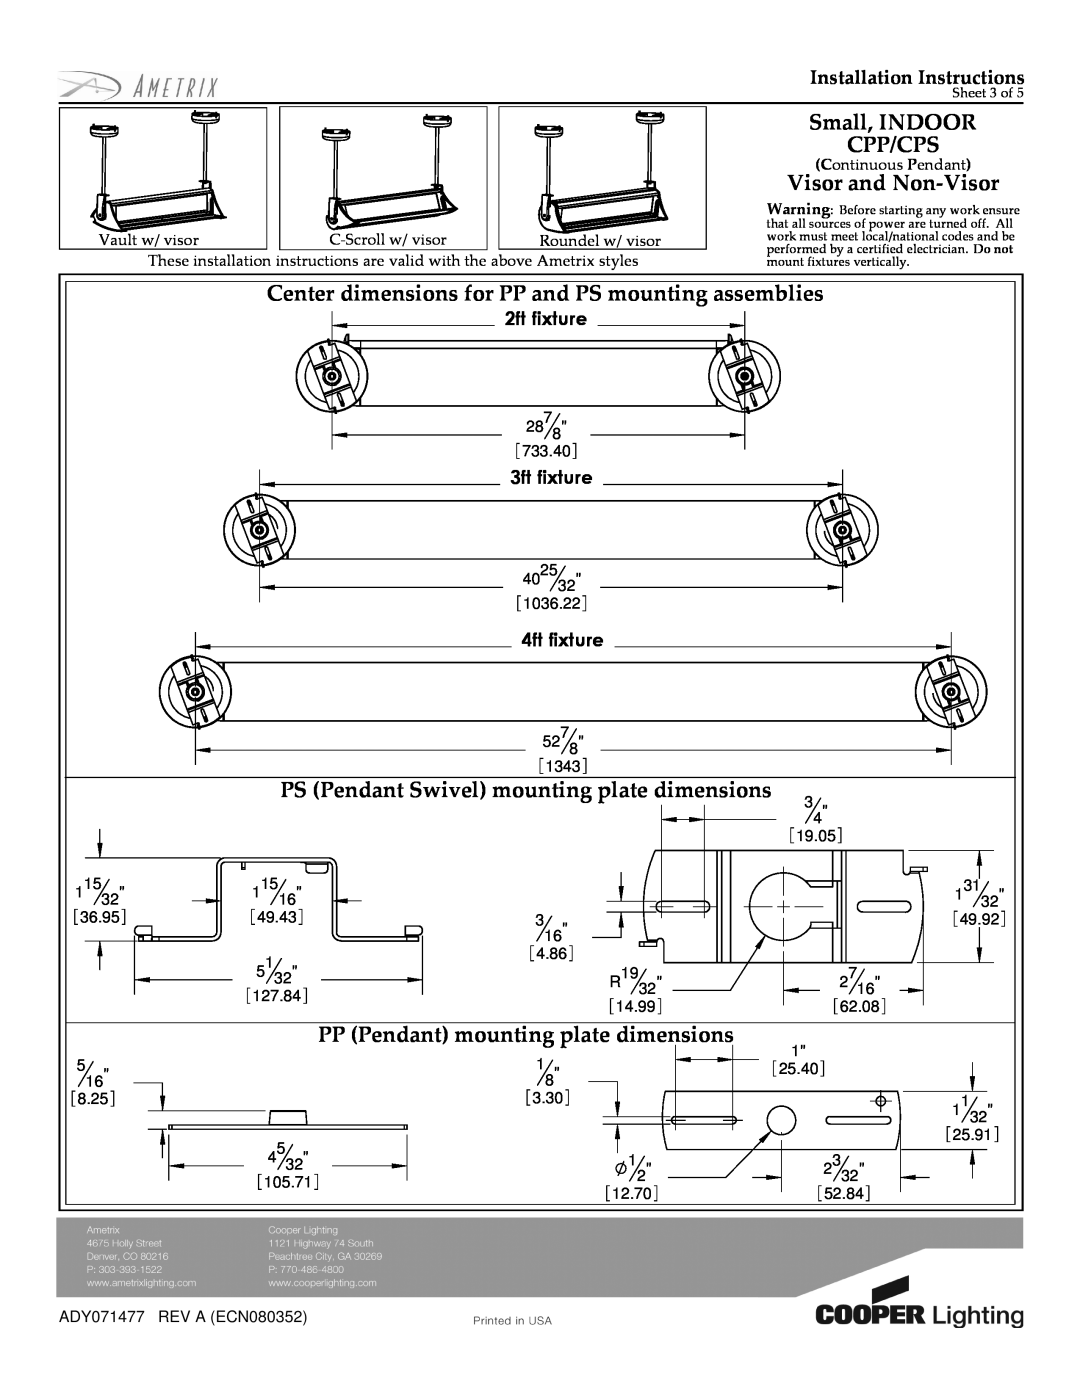 Cooper Lighting CPP/CPS PS Pendant Swivel mounting plate dimensions, PP Pendant mounting plate dimensions, 2ft fixture 